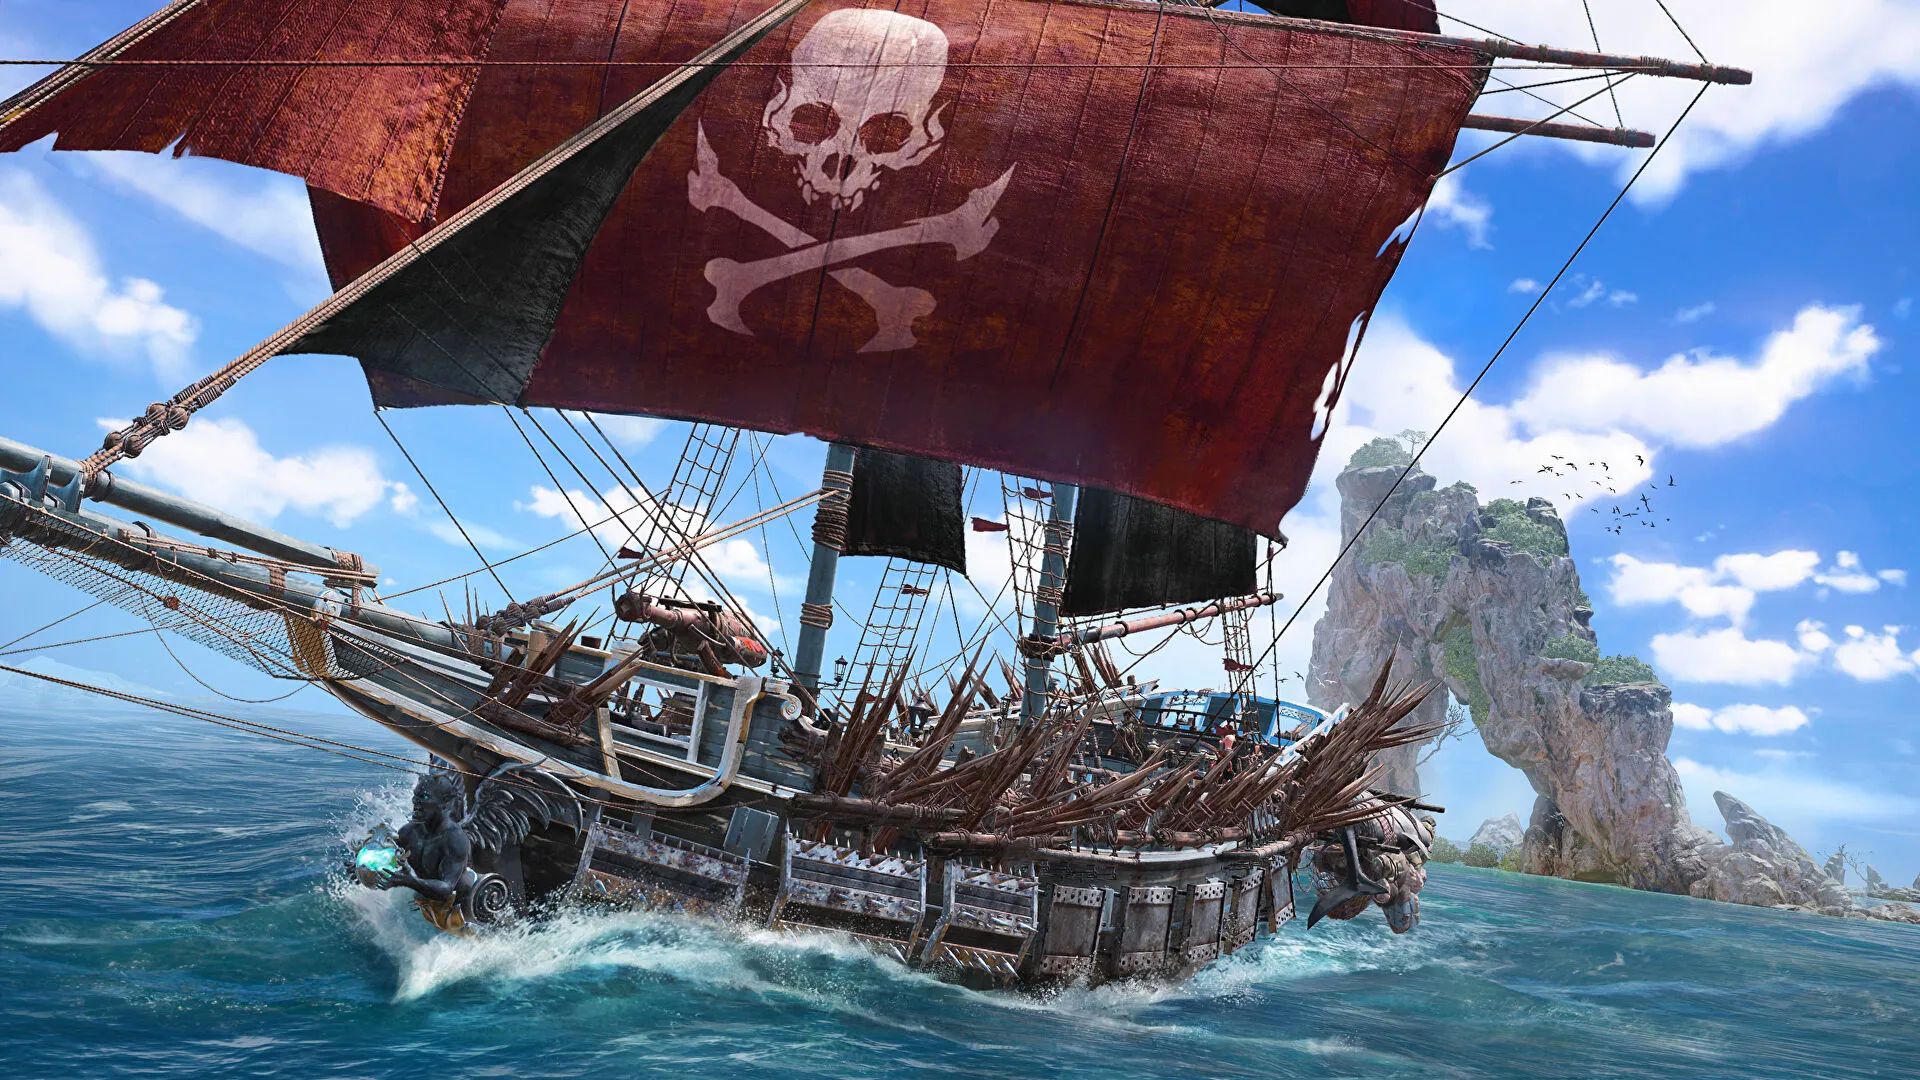 育碧海盗冒险游戏《Skull and Bones》将于明年2月发售